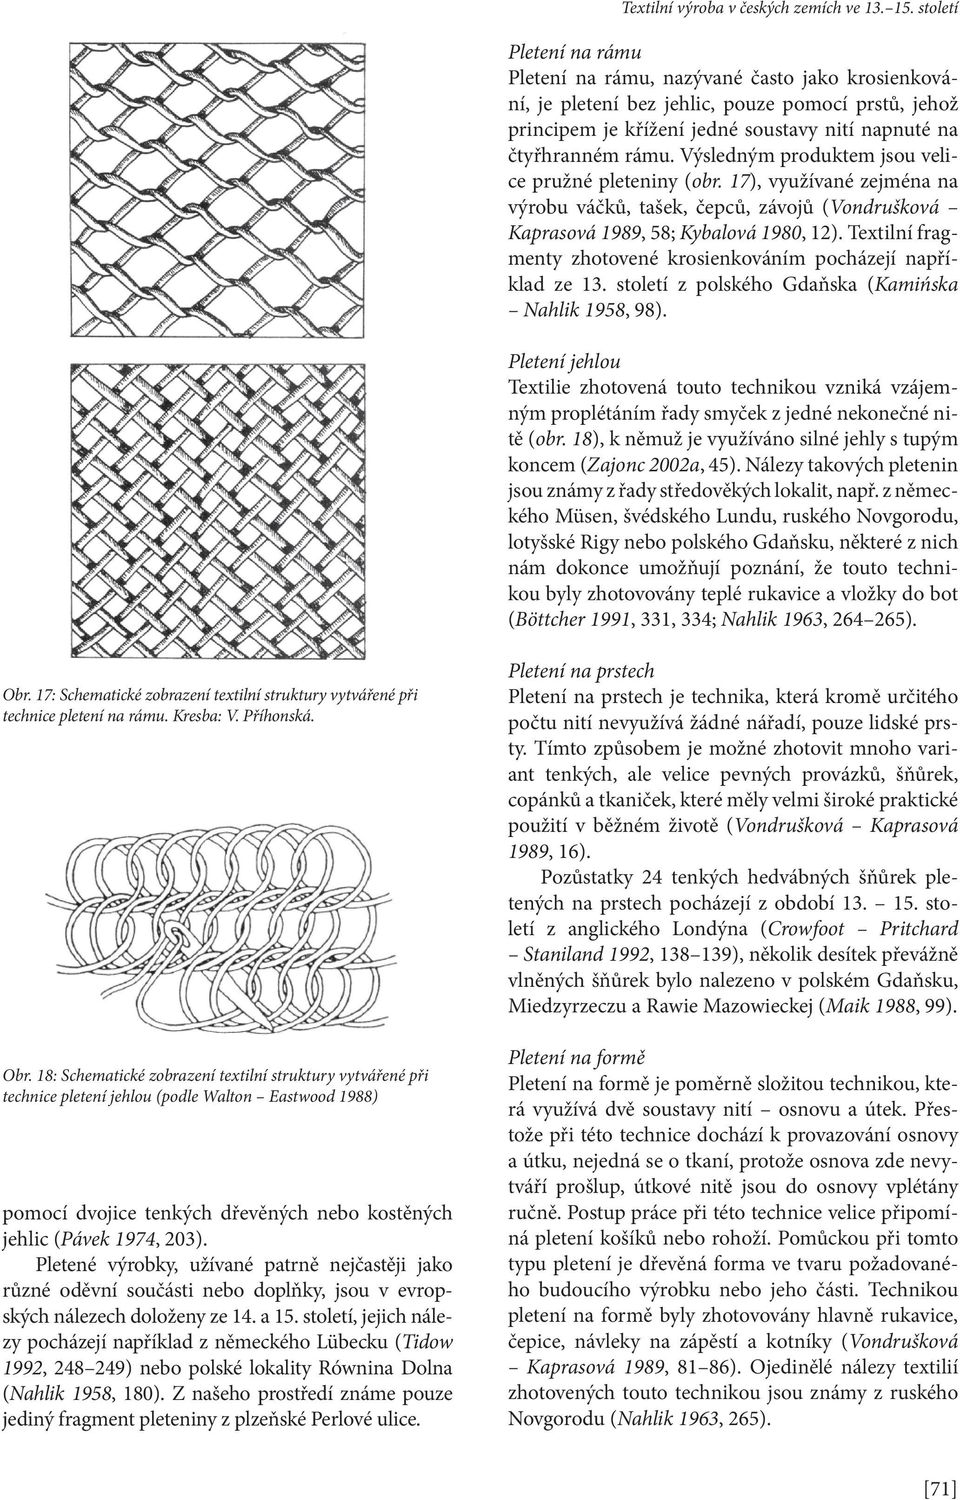 Textilní fragmenty zhotovené krosienkováním pocházejí například ze 13. století z polského Gdaňska (Kamińska Nahlik 1958, 98).